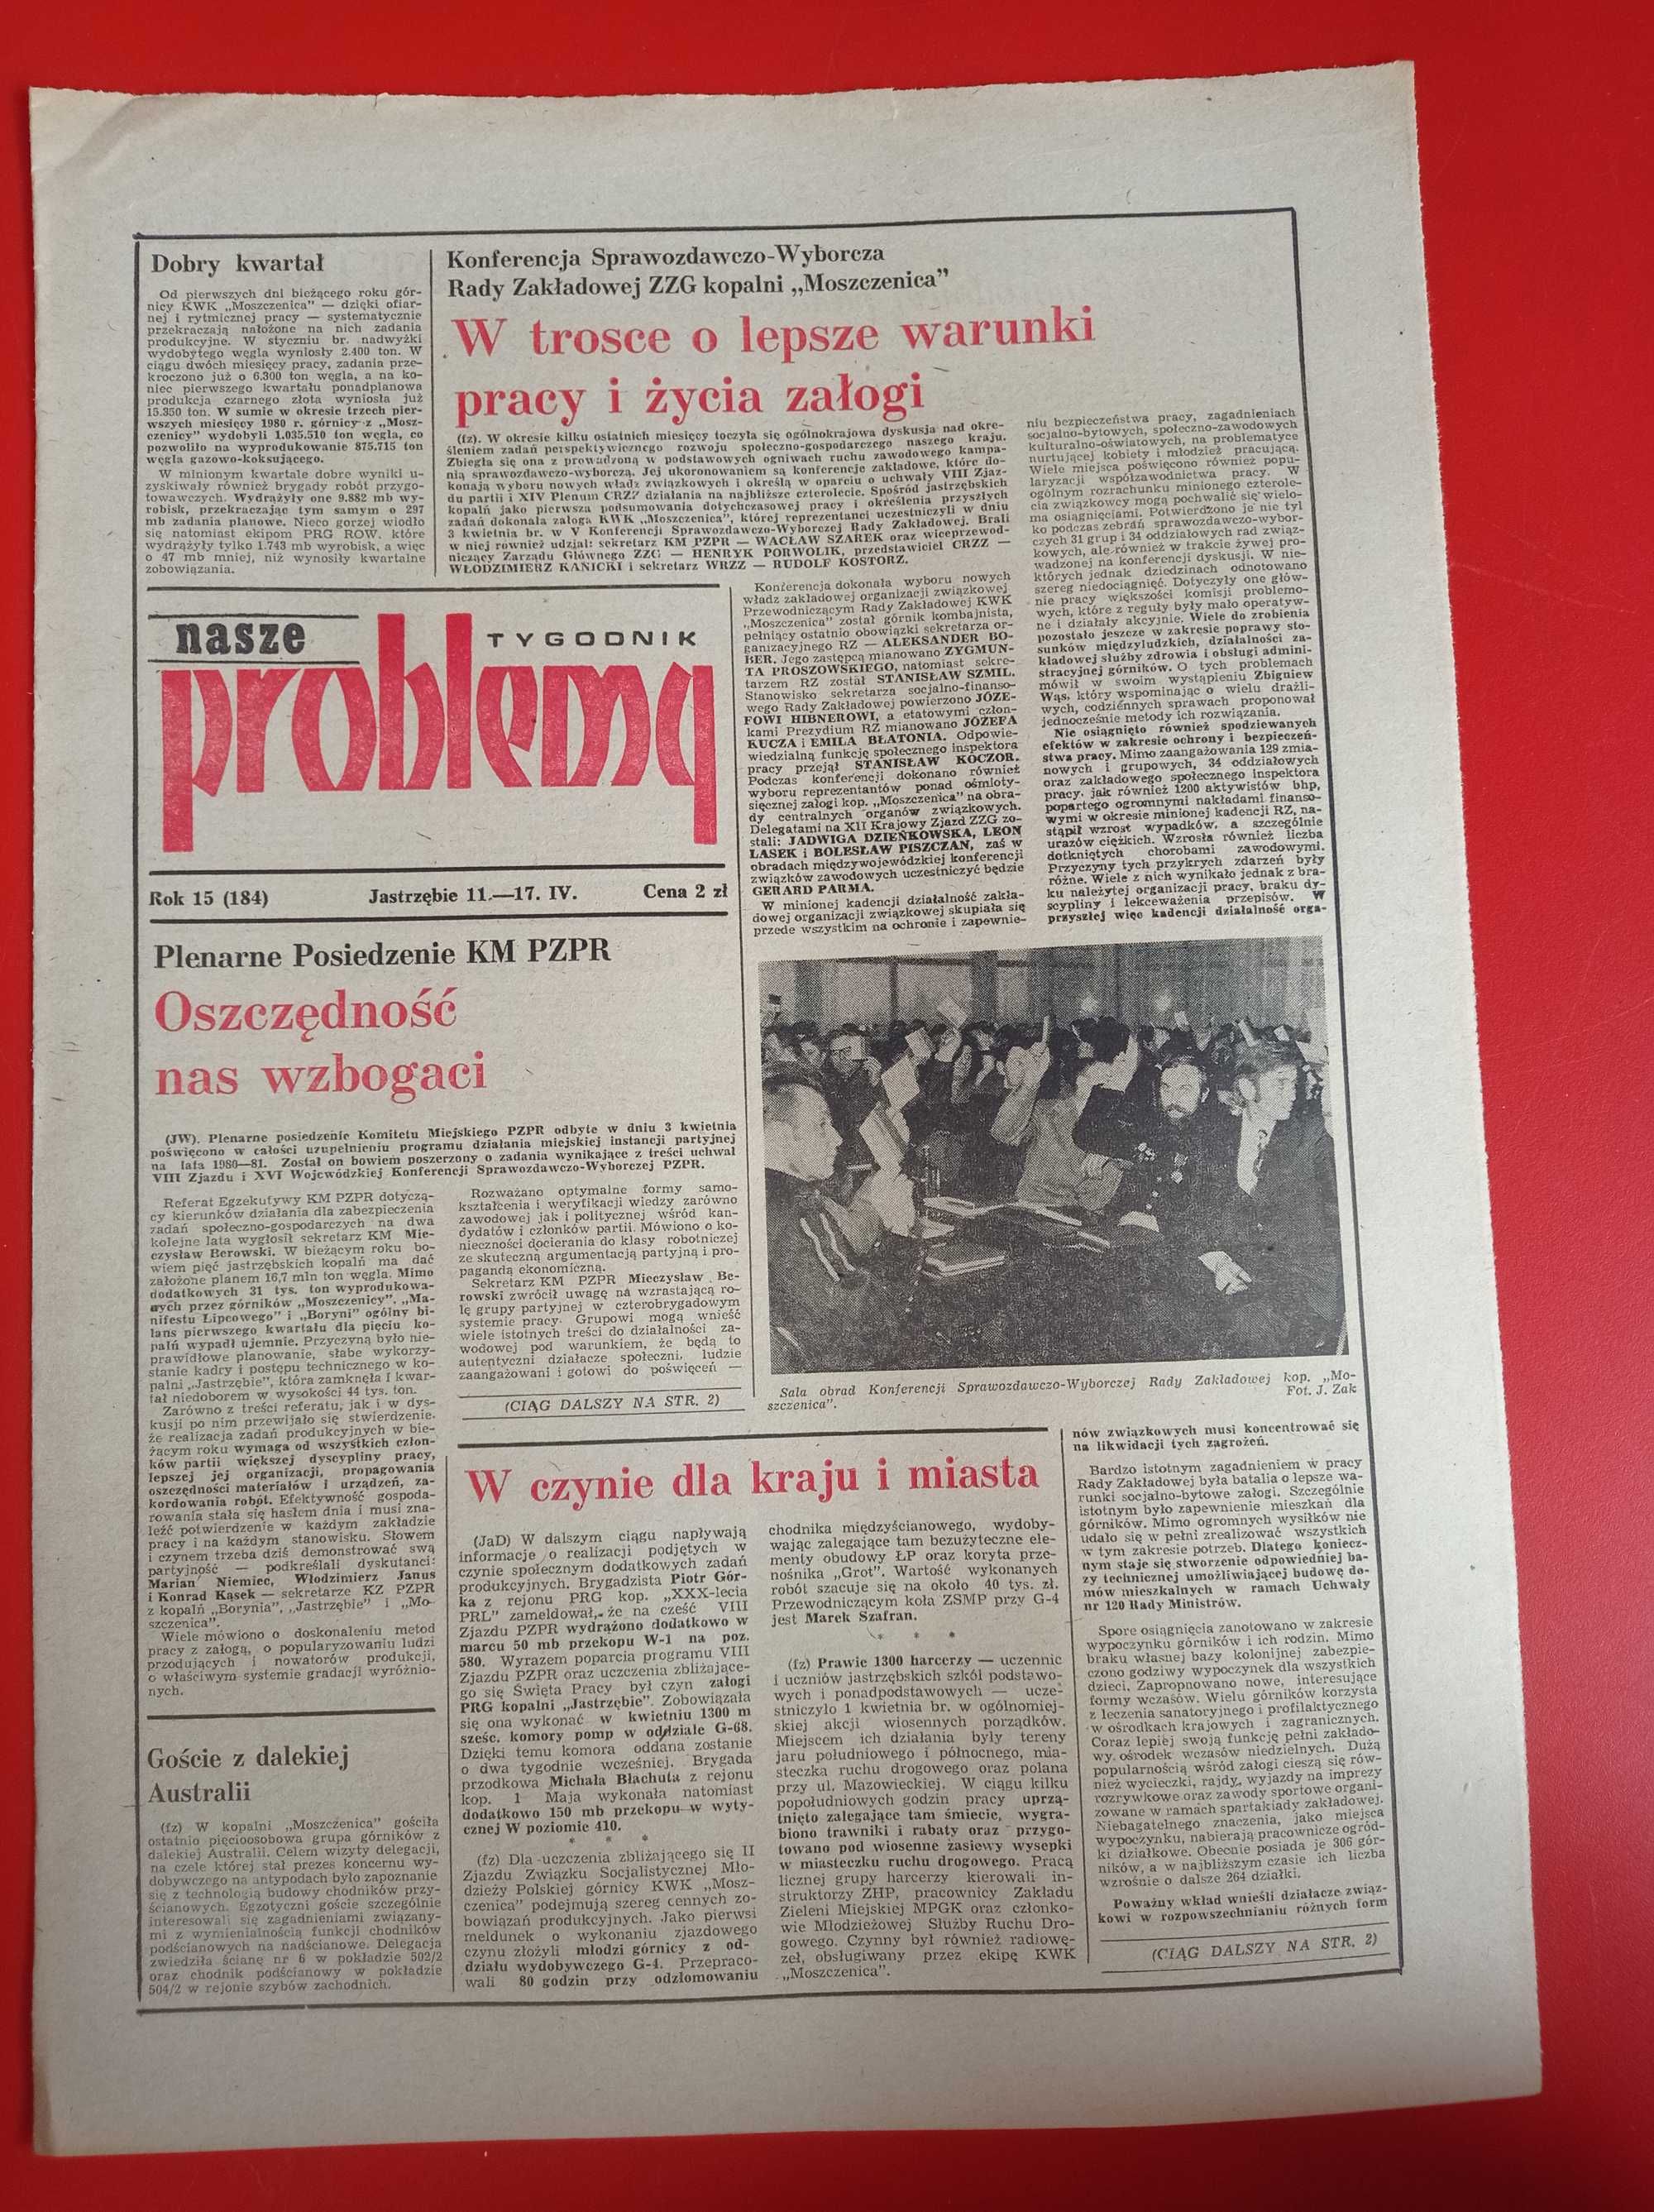 Nasze problemy, Jastrzębie, nr 15, 11-17 kwietnia 1980